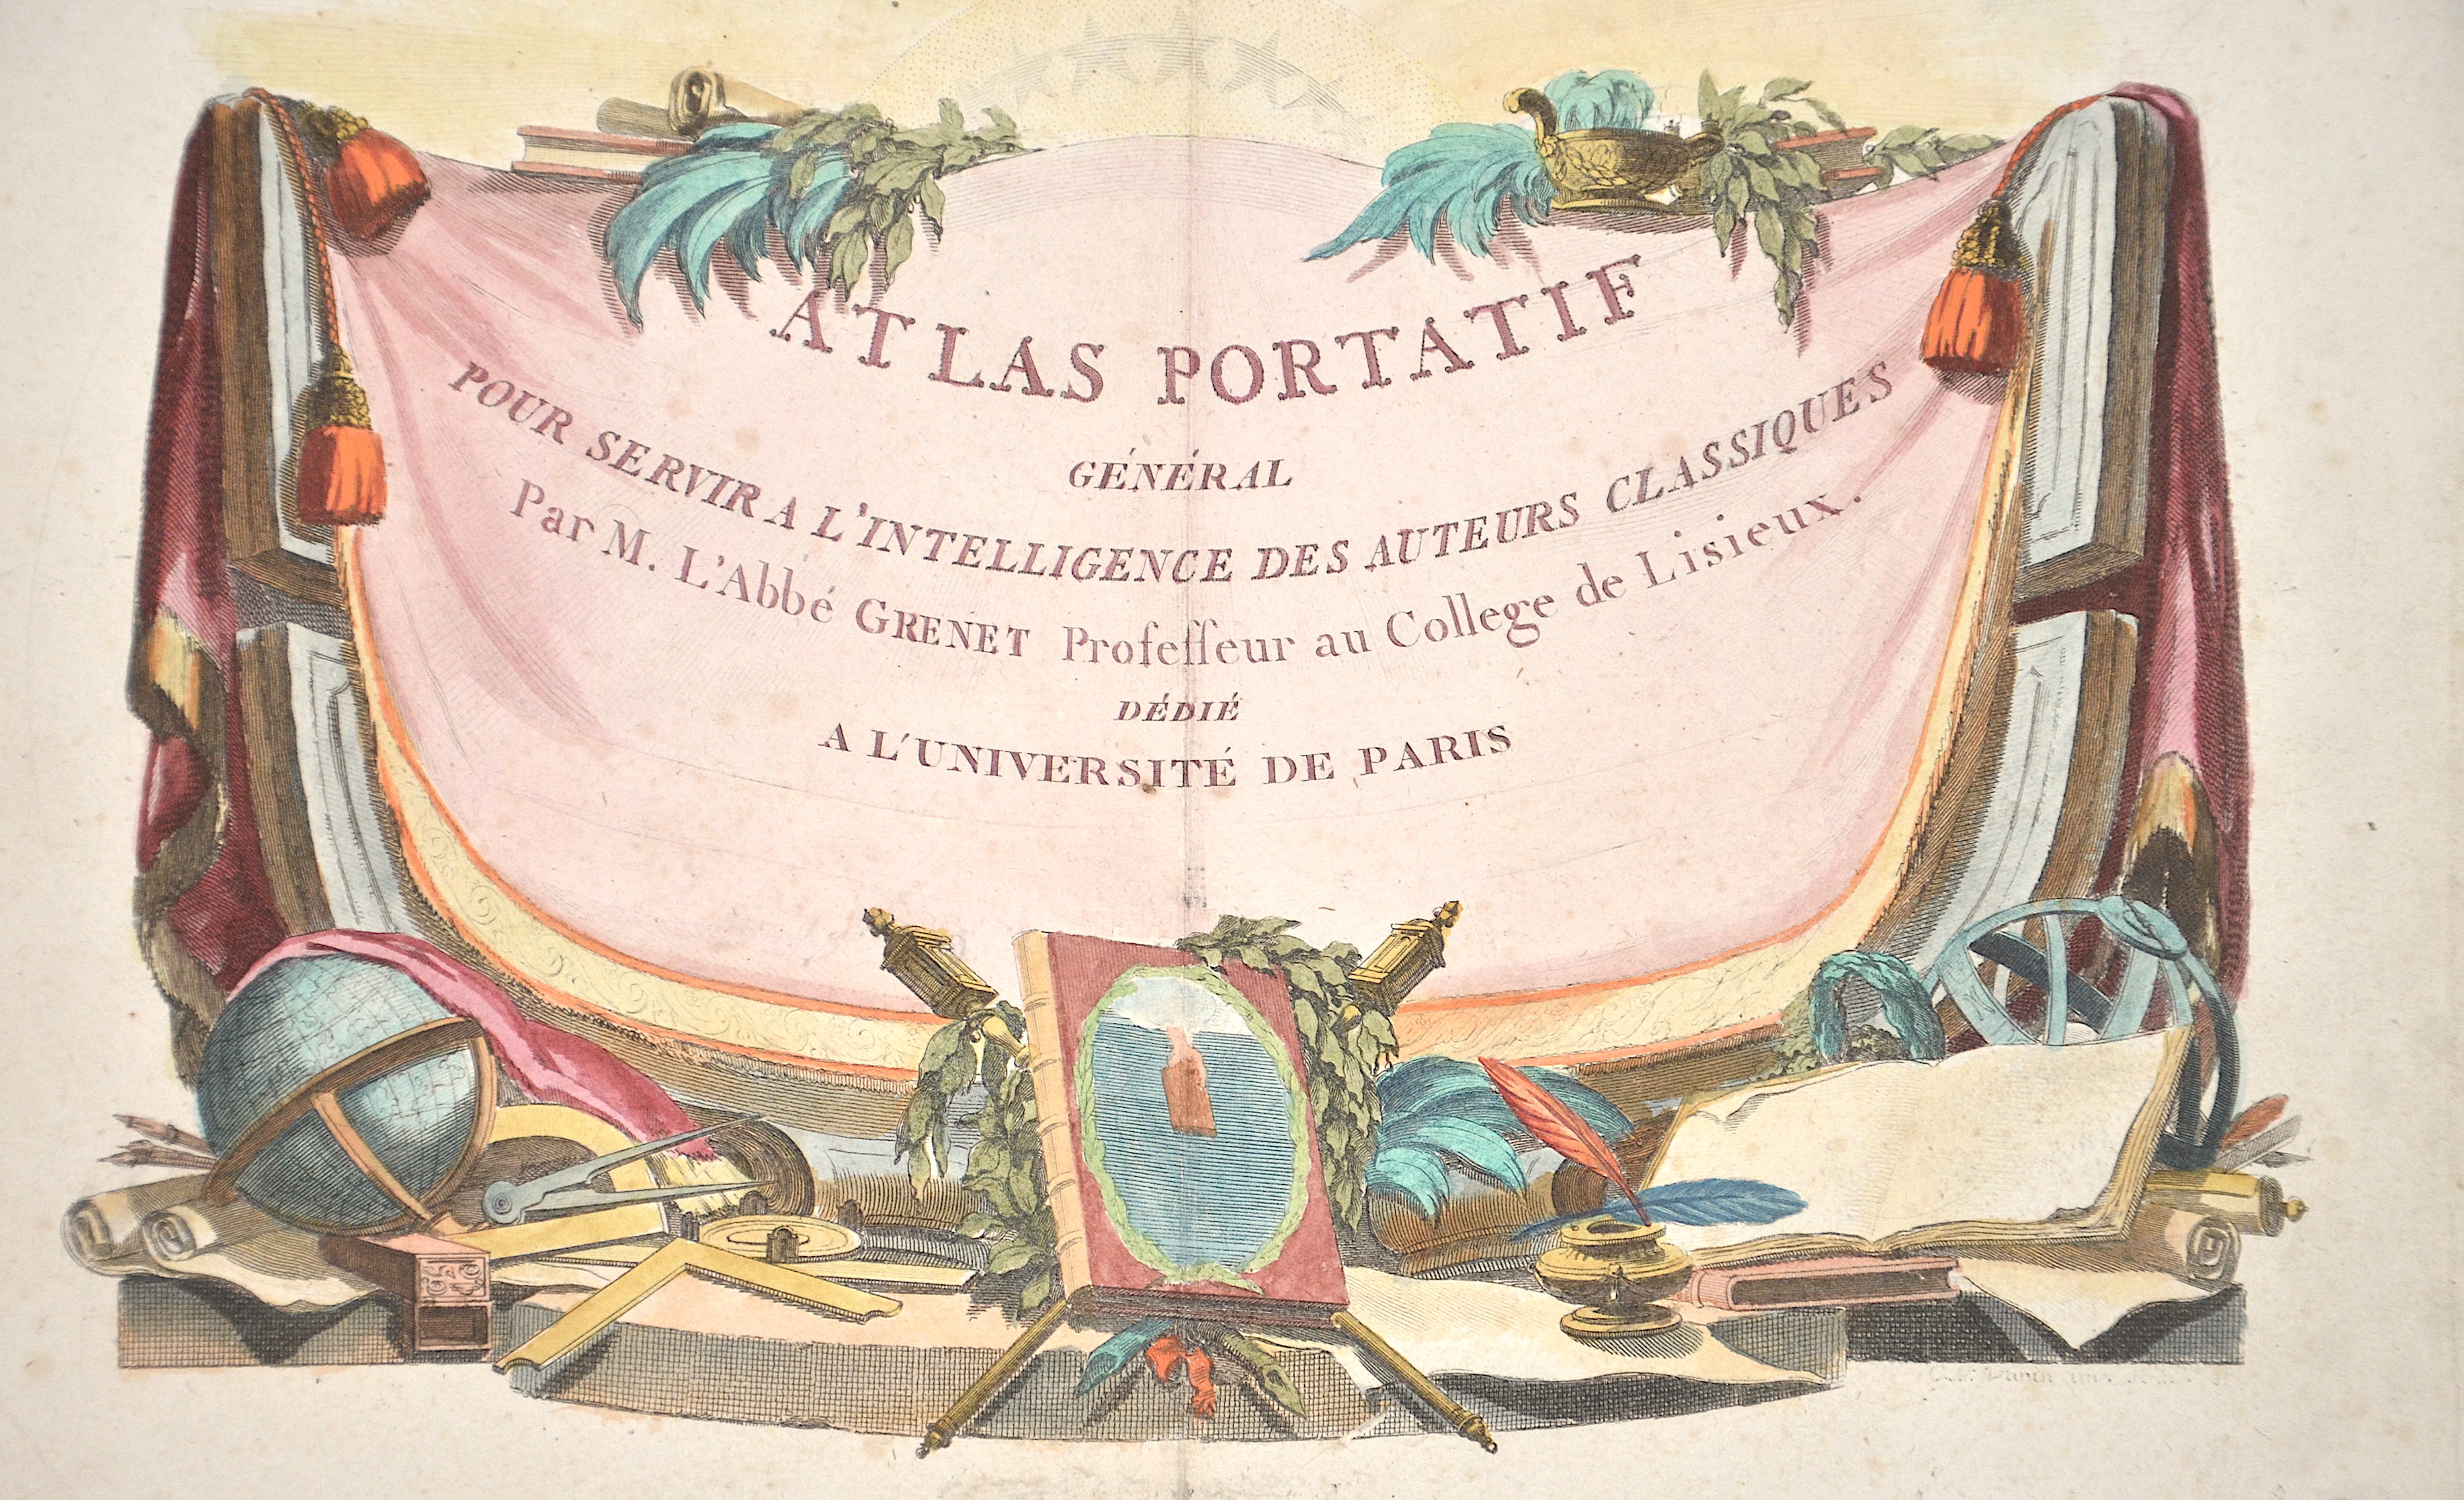 Bonne Rigobert Atlas Portatif General Pour servir a l’intelligence des Auteurs Classiques par M. L’Abbe Grenet..